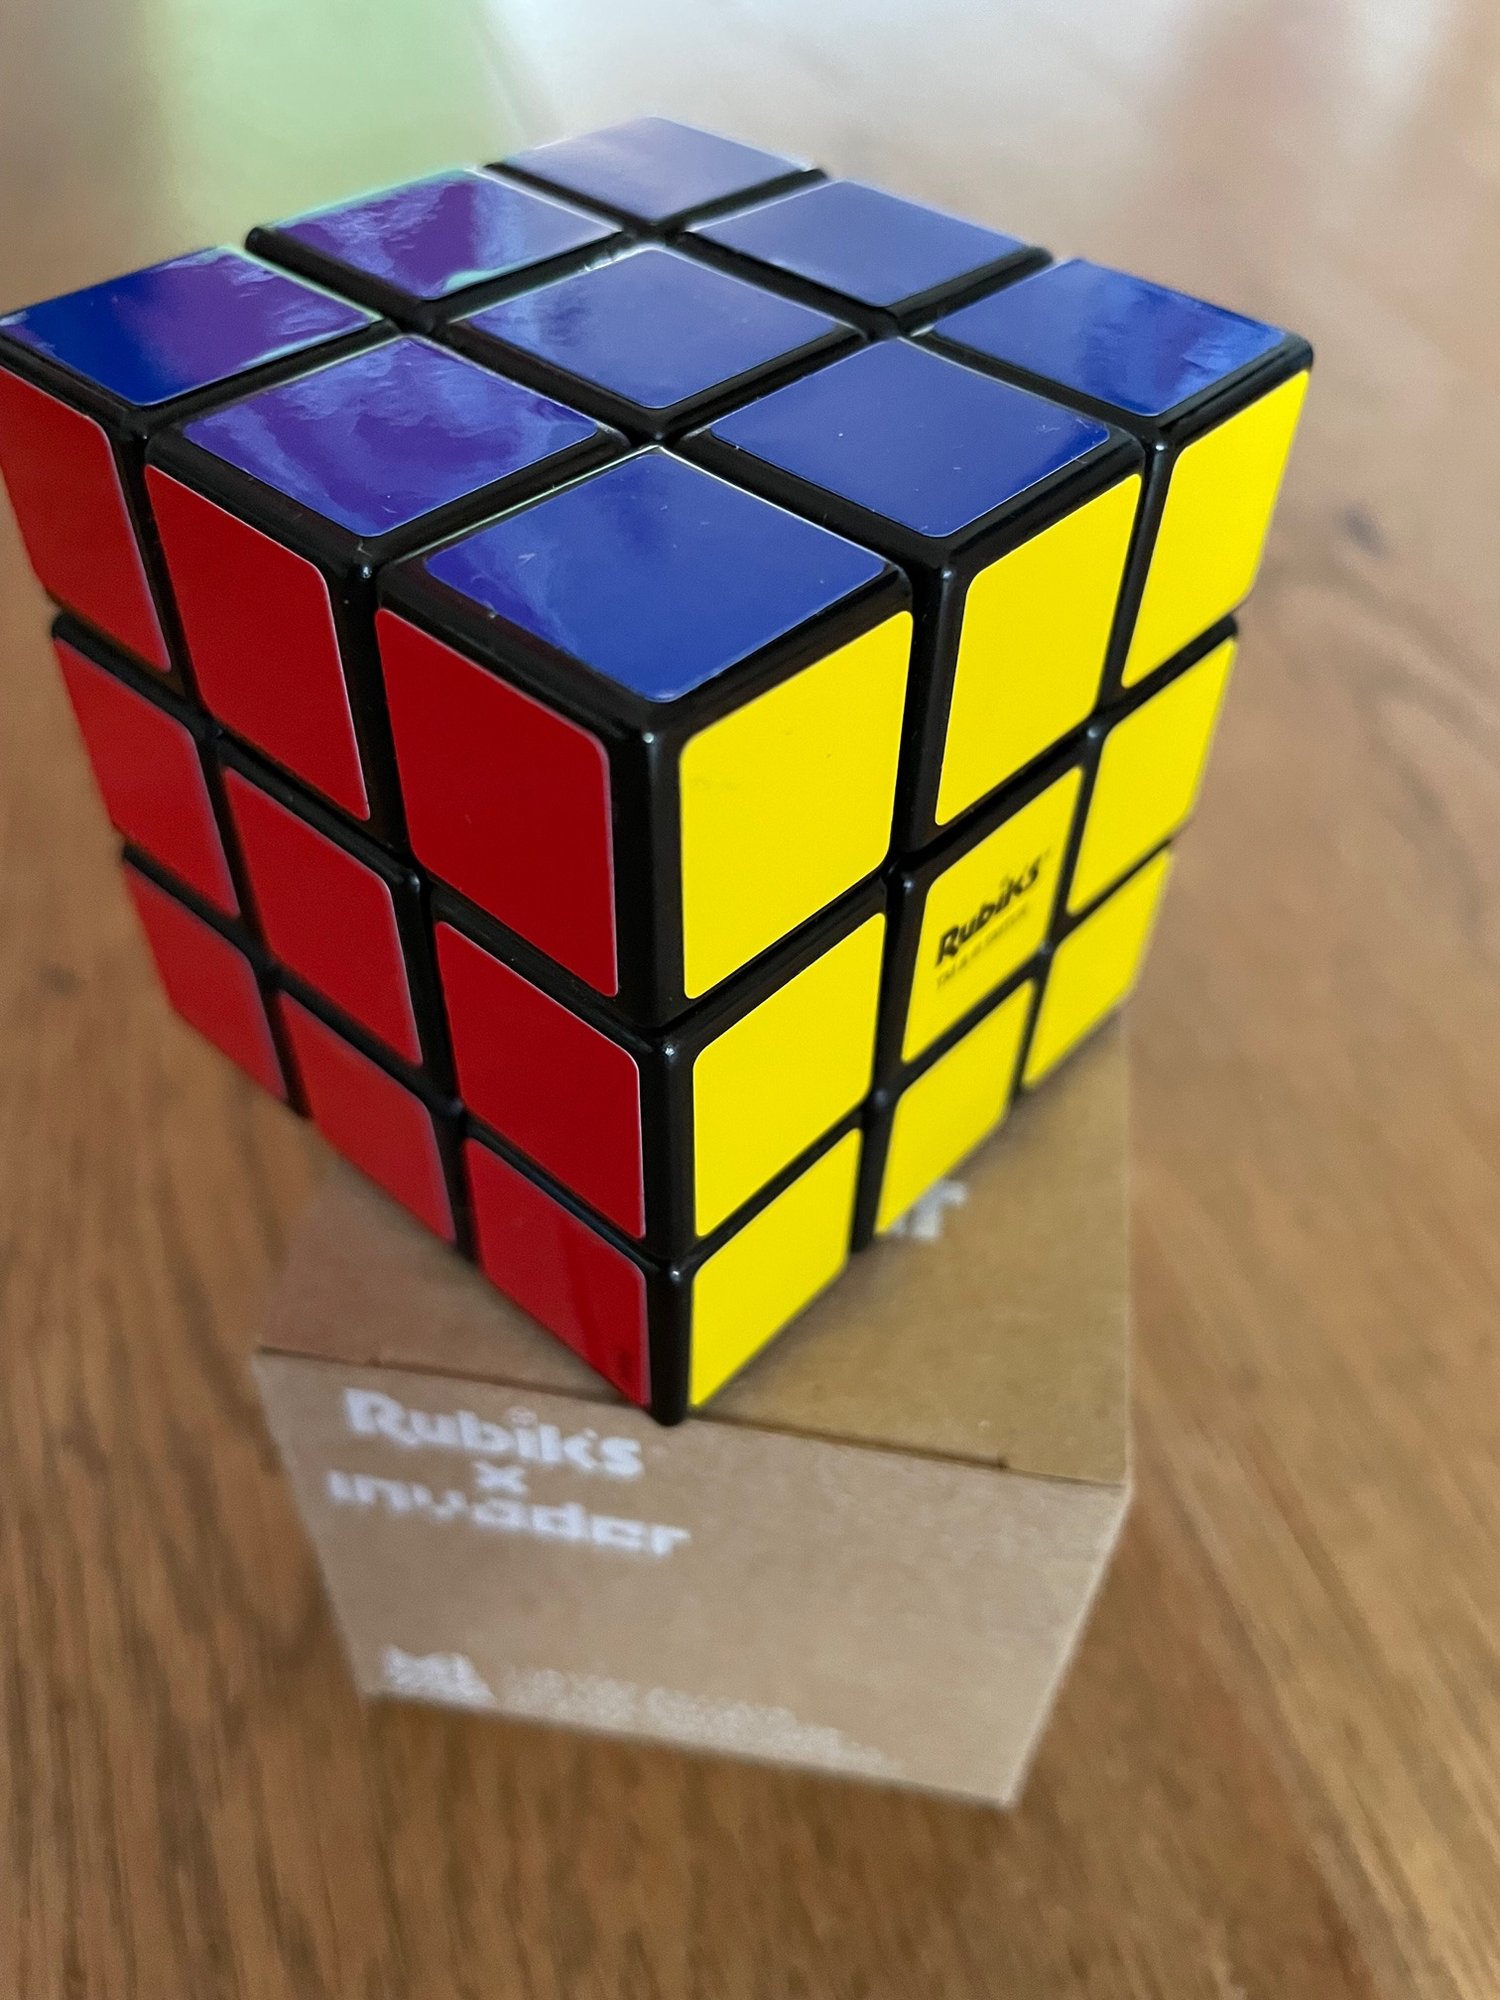 Invader (b. 1969-) "Rubikcubist" RUBIK'S X INVADER CUBE + 11 Invader Postcard Kit, SOLD OUT 2022 - Image 11 of 11